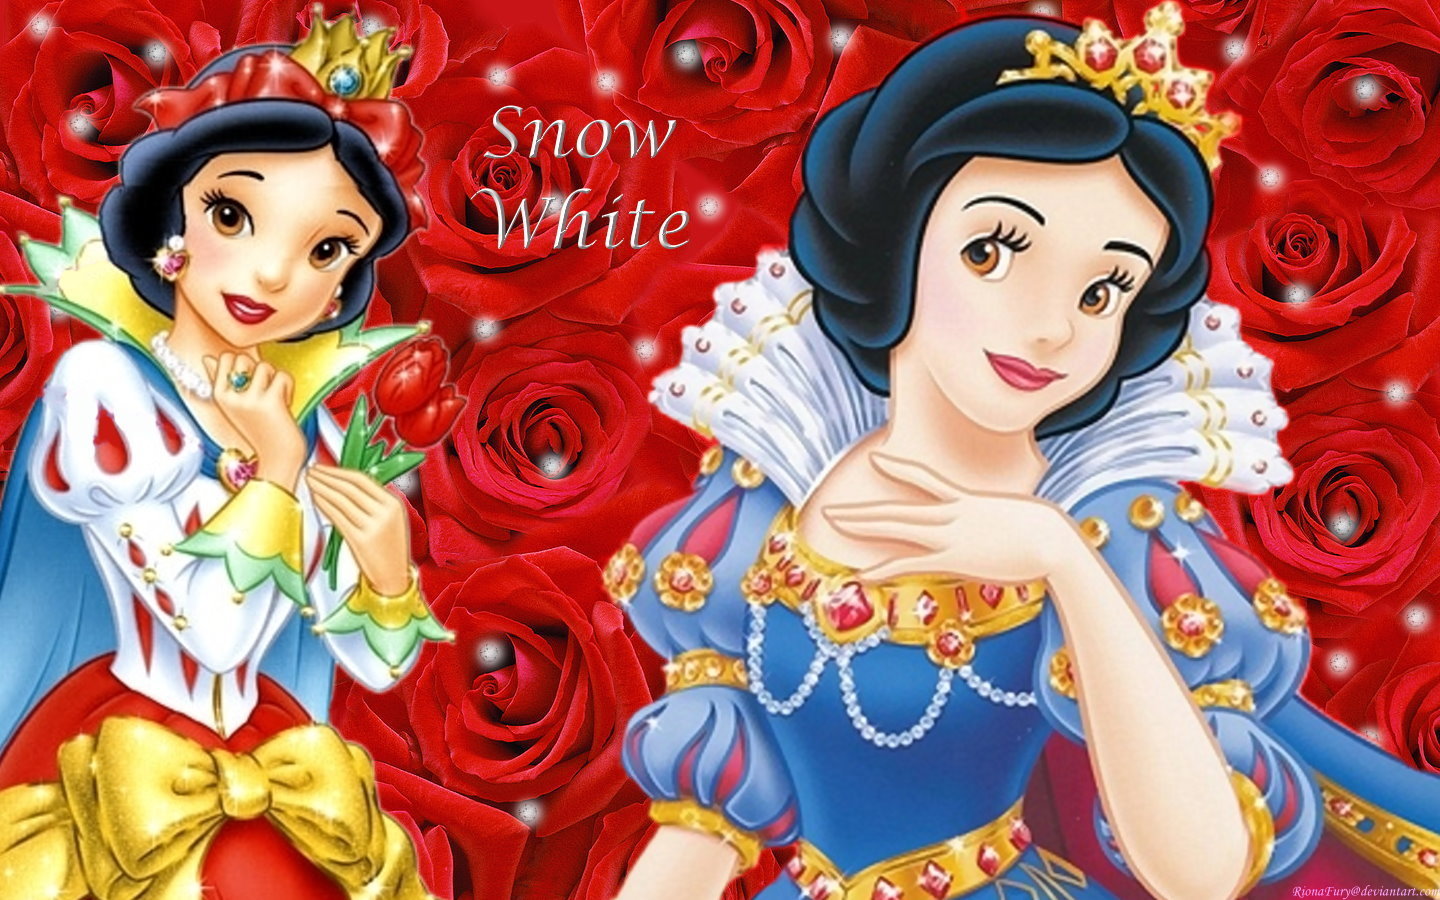 Snow White - Disney Princess Wallpaper (22876334) - Fanpop